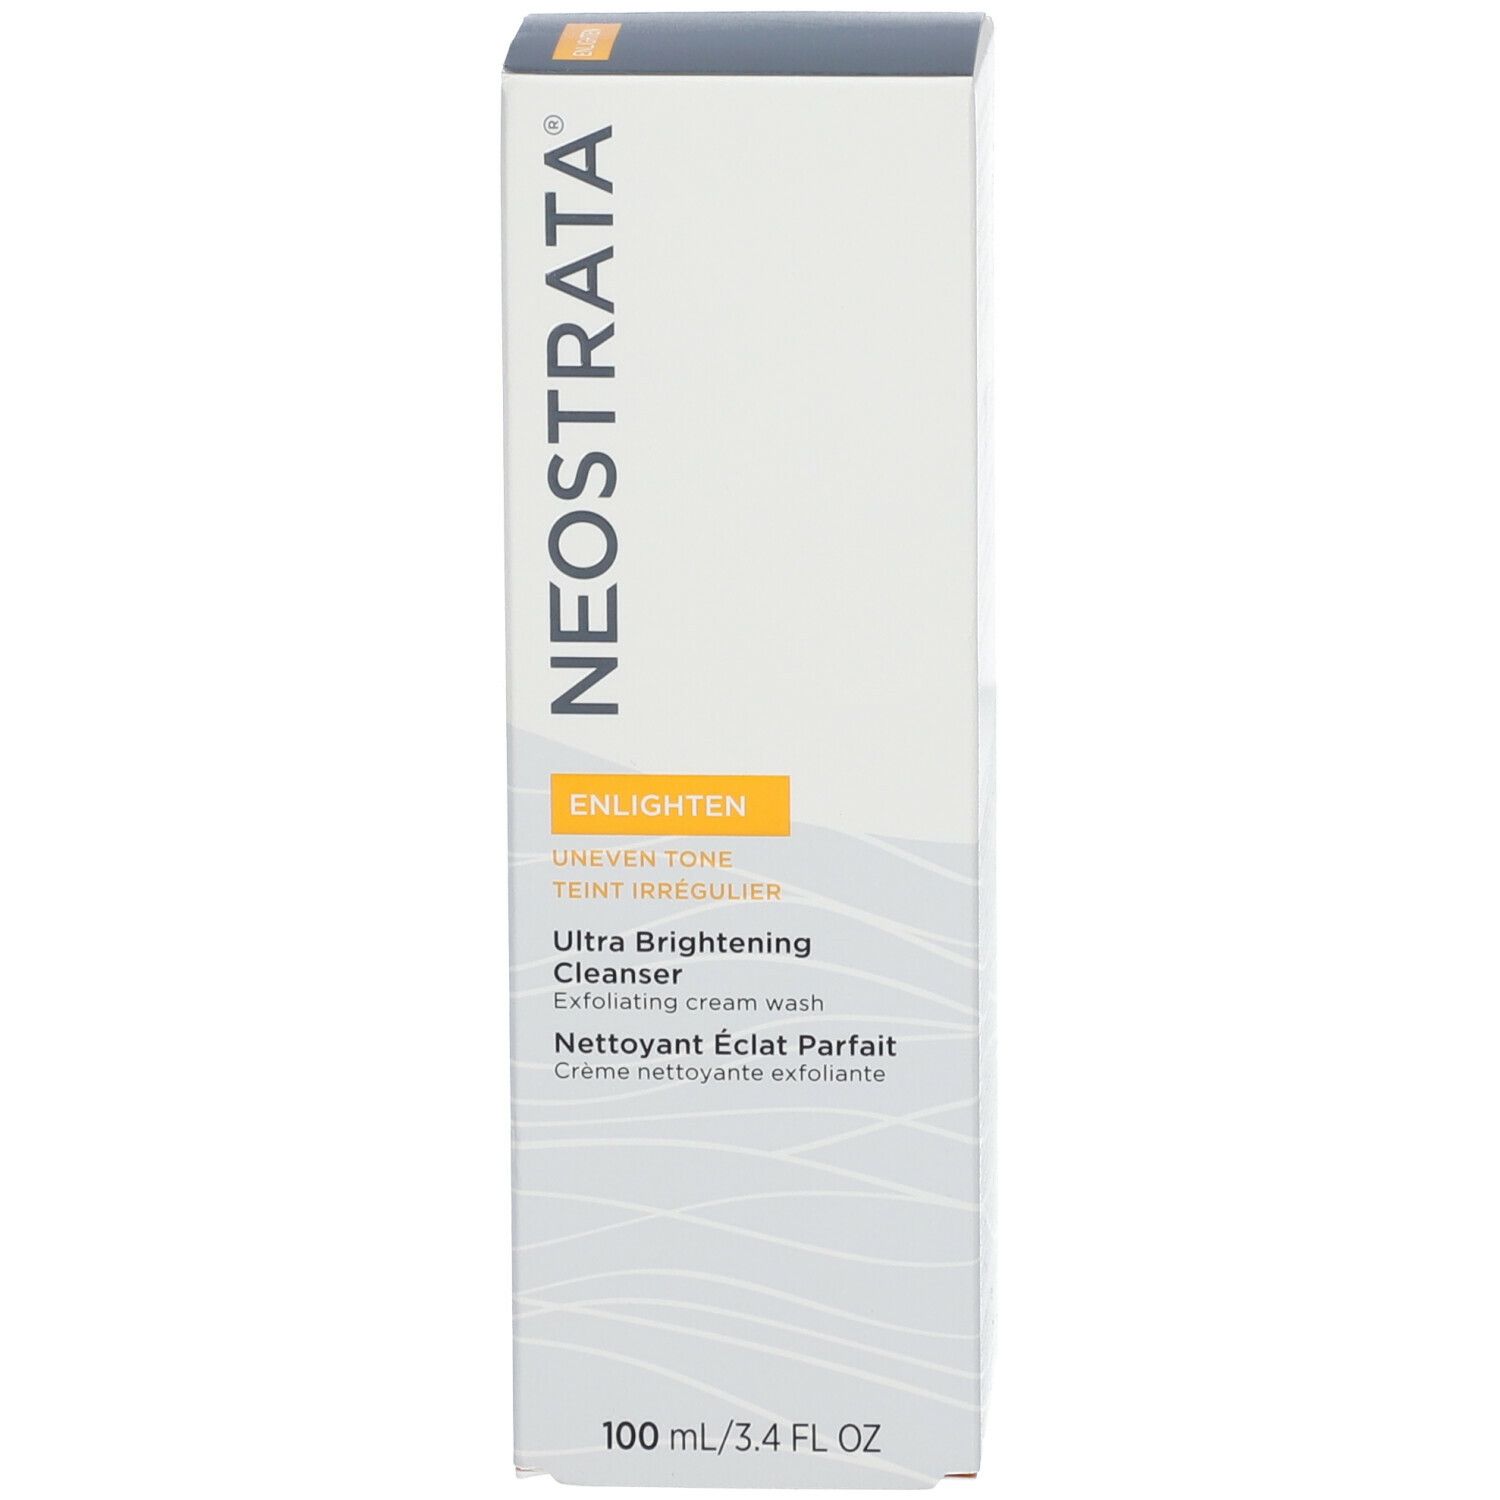 NeoStrata® Enlighten Ultra Brightening Cleanser